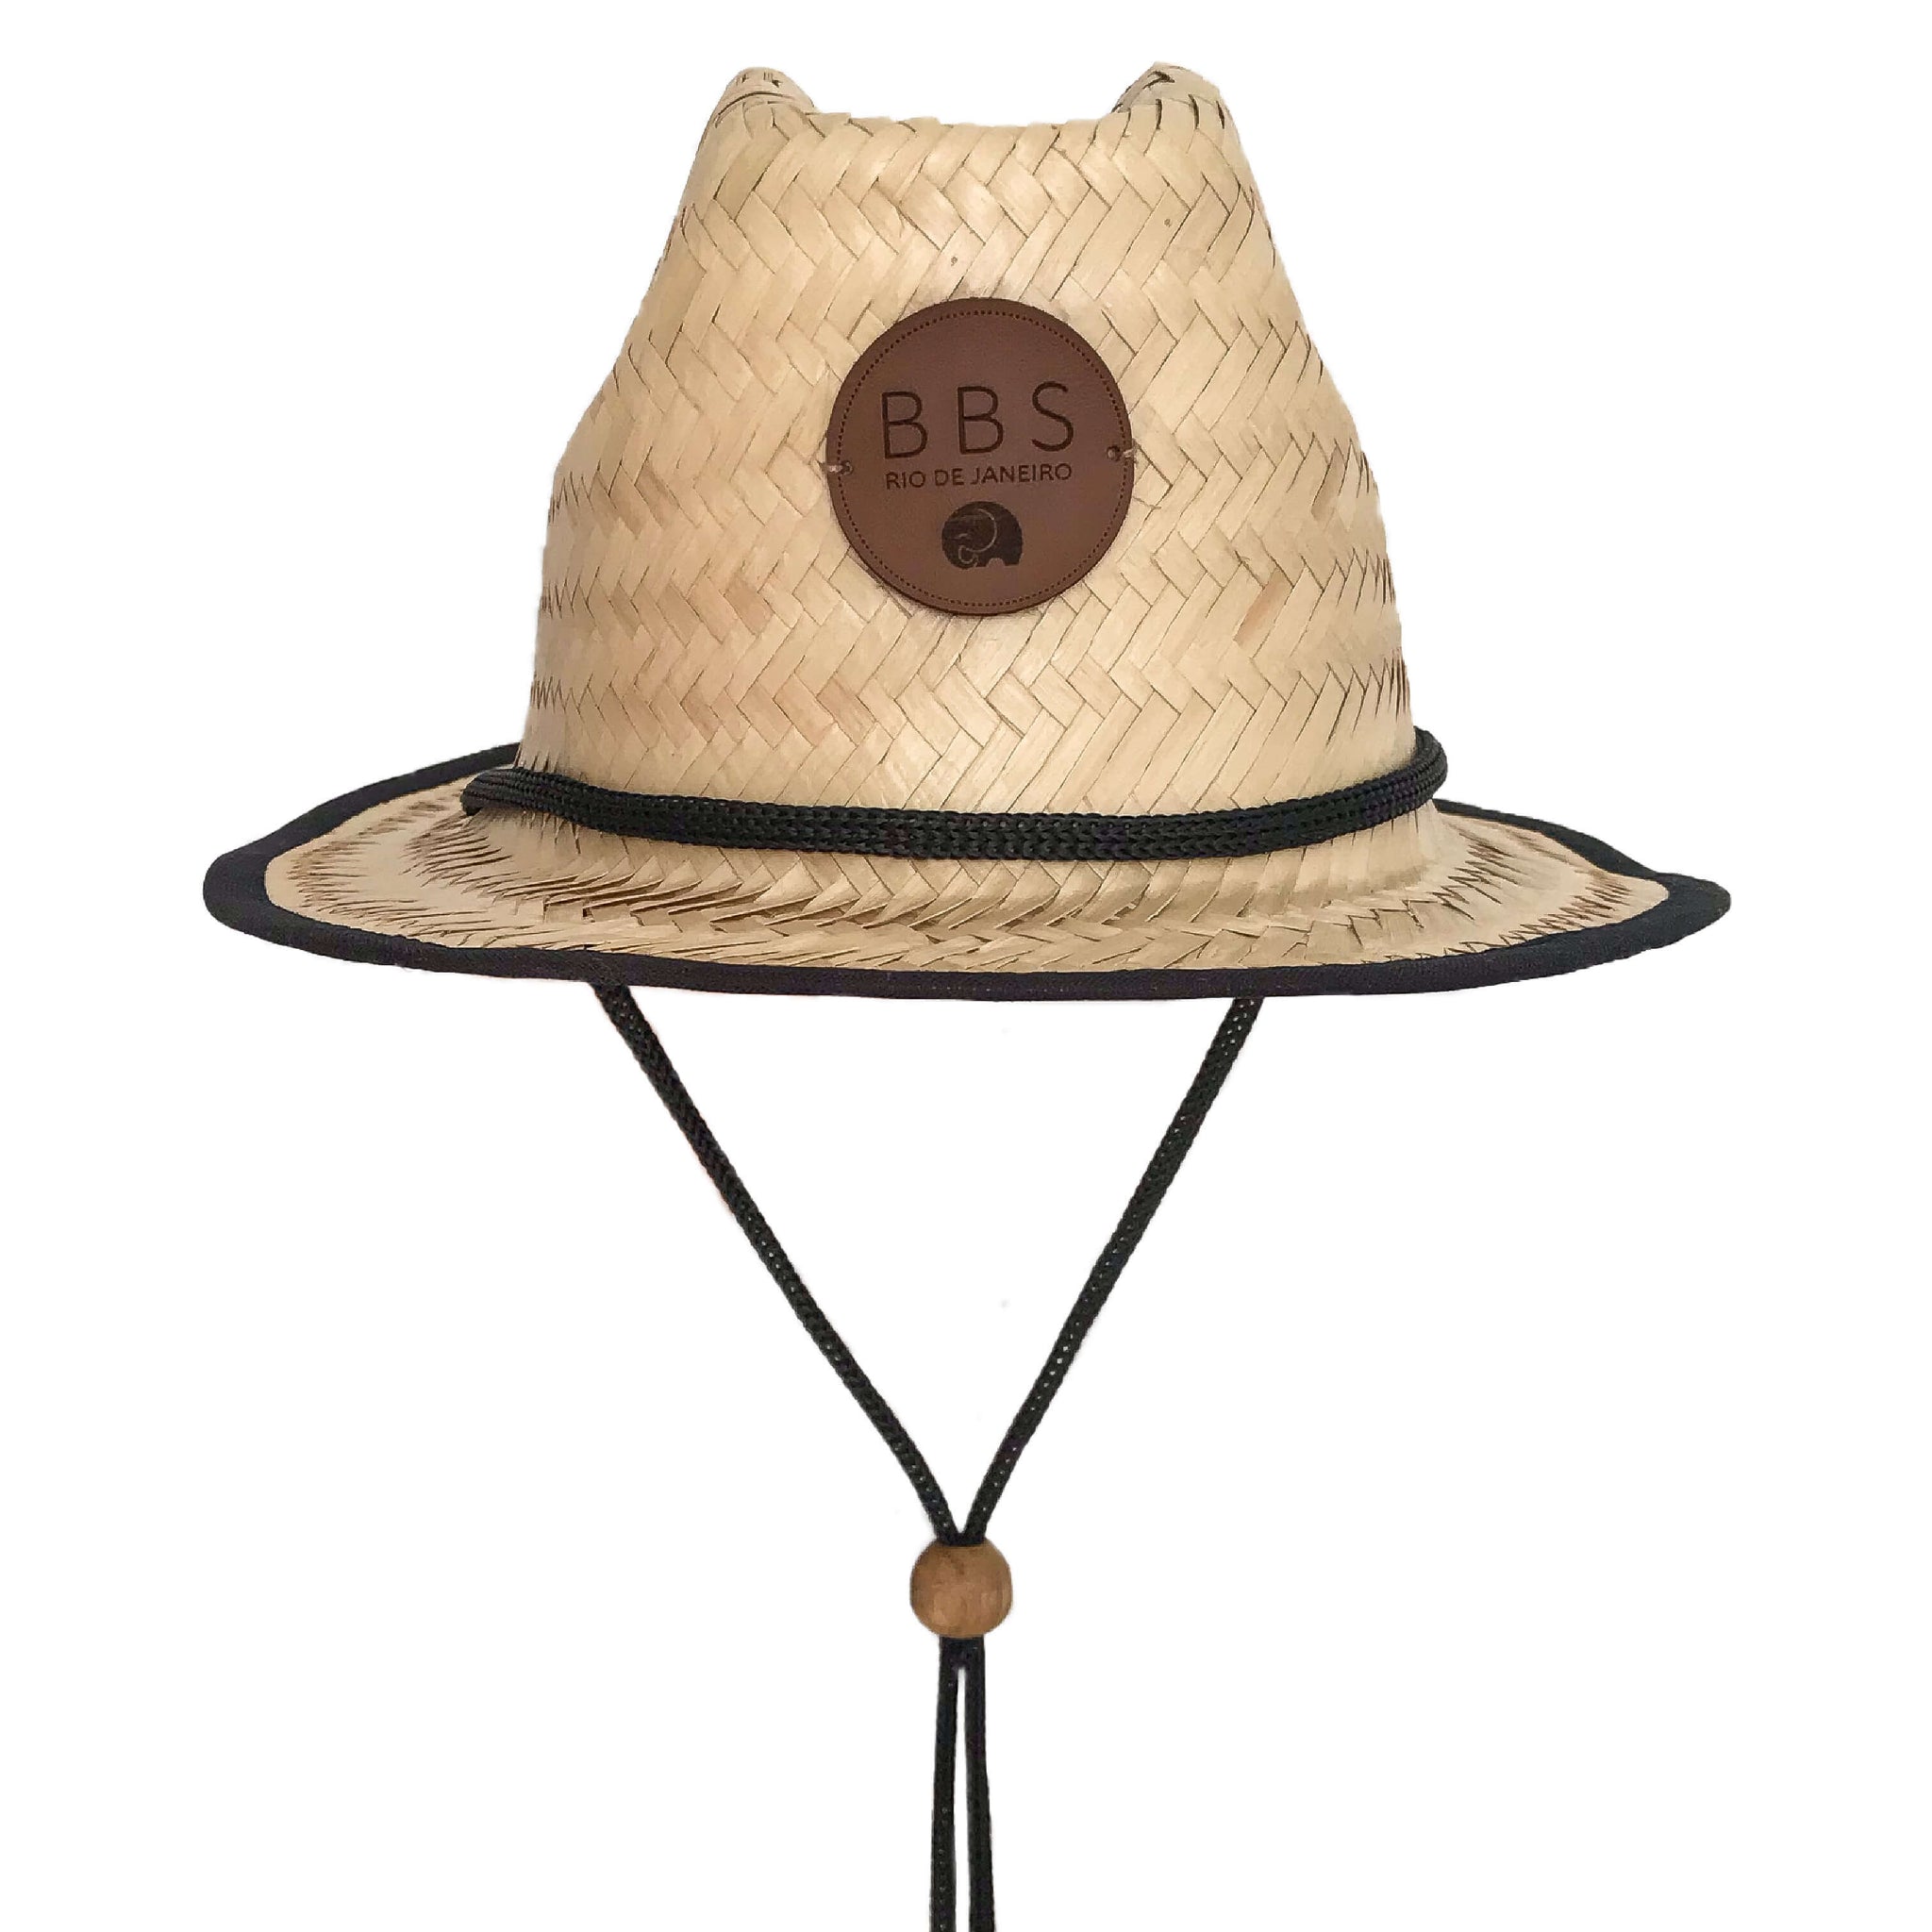 Chapéu de palha unissex para bebês e criança estilo "fisherman", também conhecido como chapéu do surf. É unissex, com detalhe em tecido preto e alças reguláveis. Para curtir a praia, o sol e a natureza com estilo e proteção